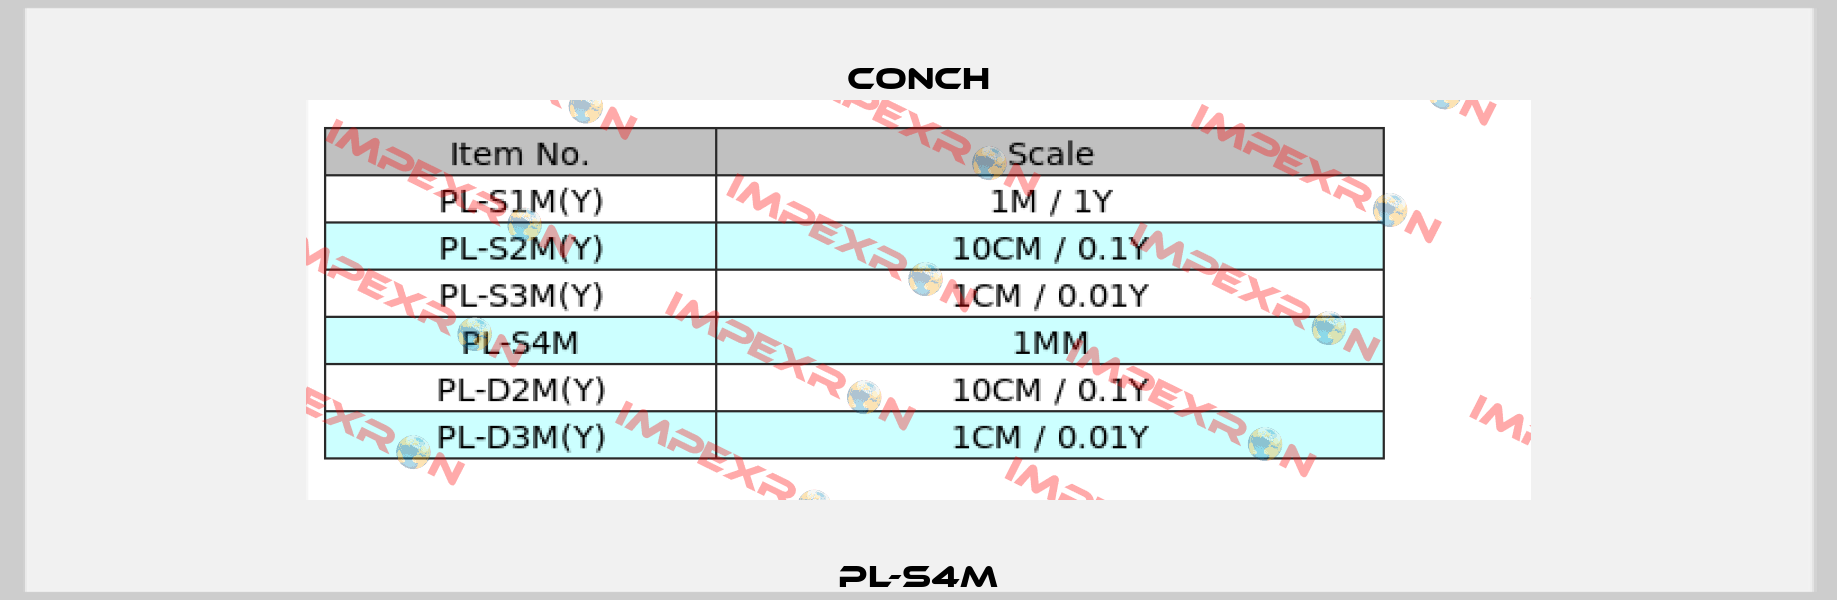 PL-S4M Conch